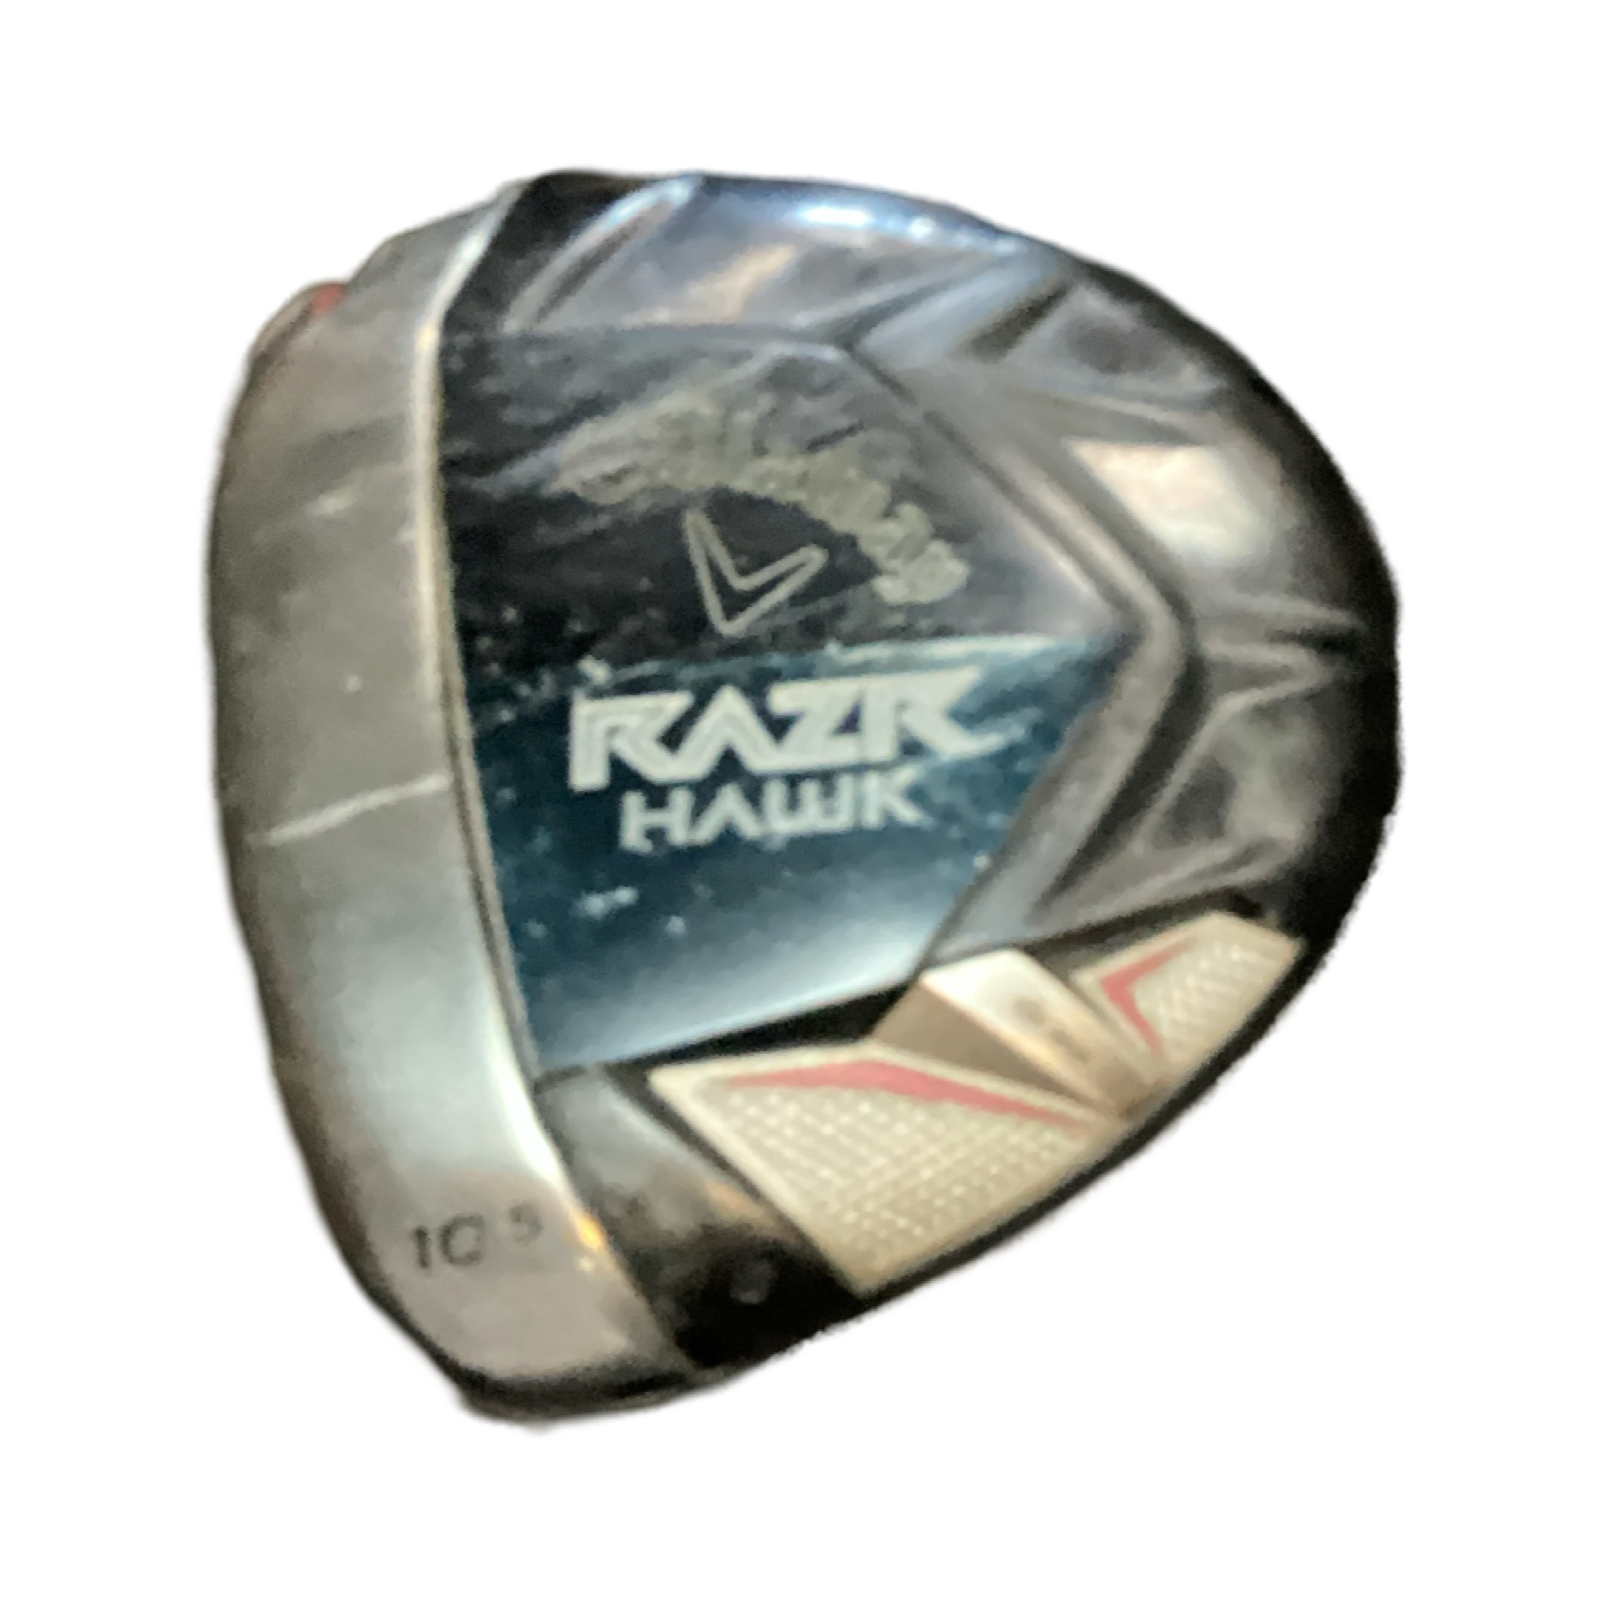 Used Callaway RAZR HAWK 10.5 Degree Stiff Flex Graphite Shaft Drivers  Drivers